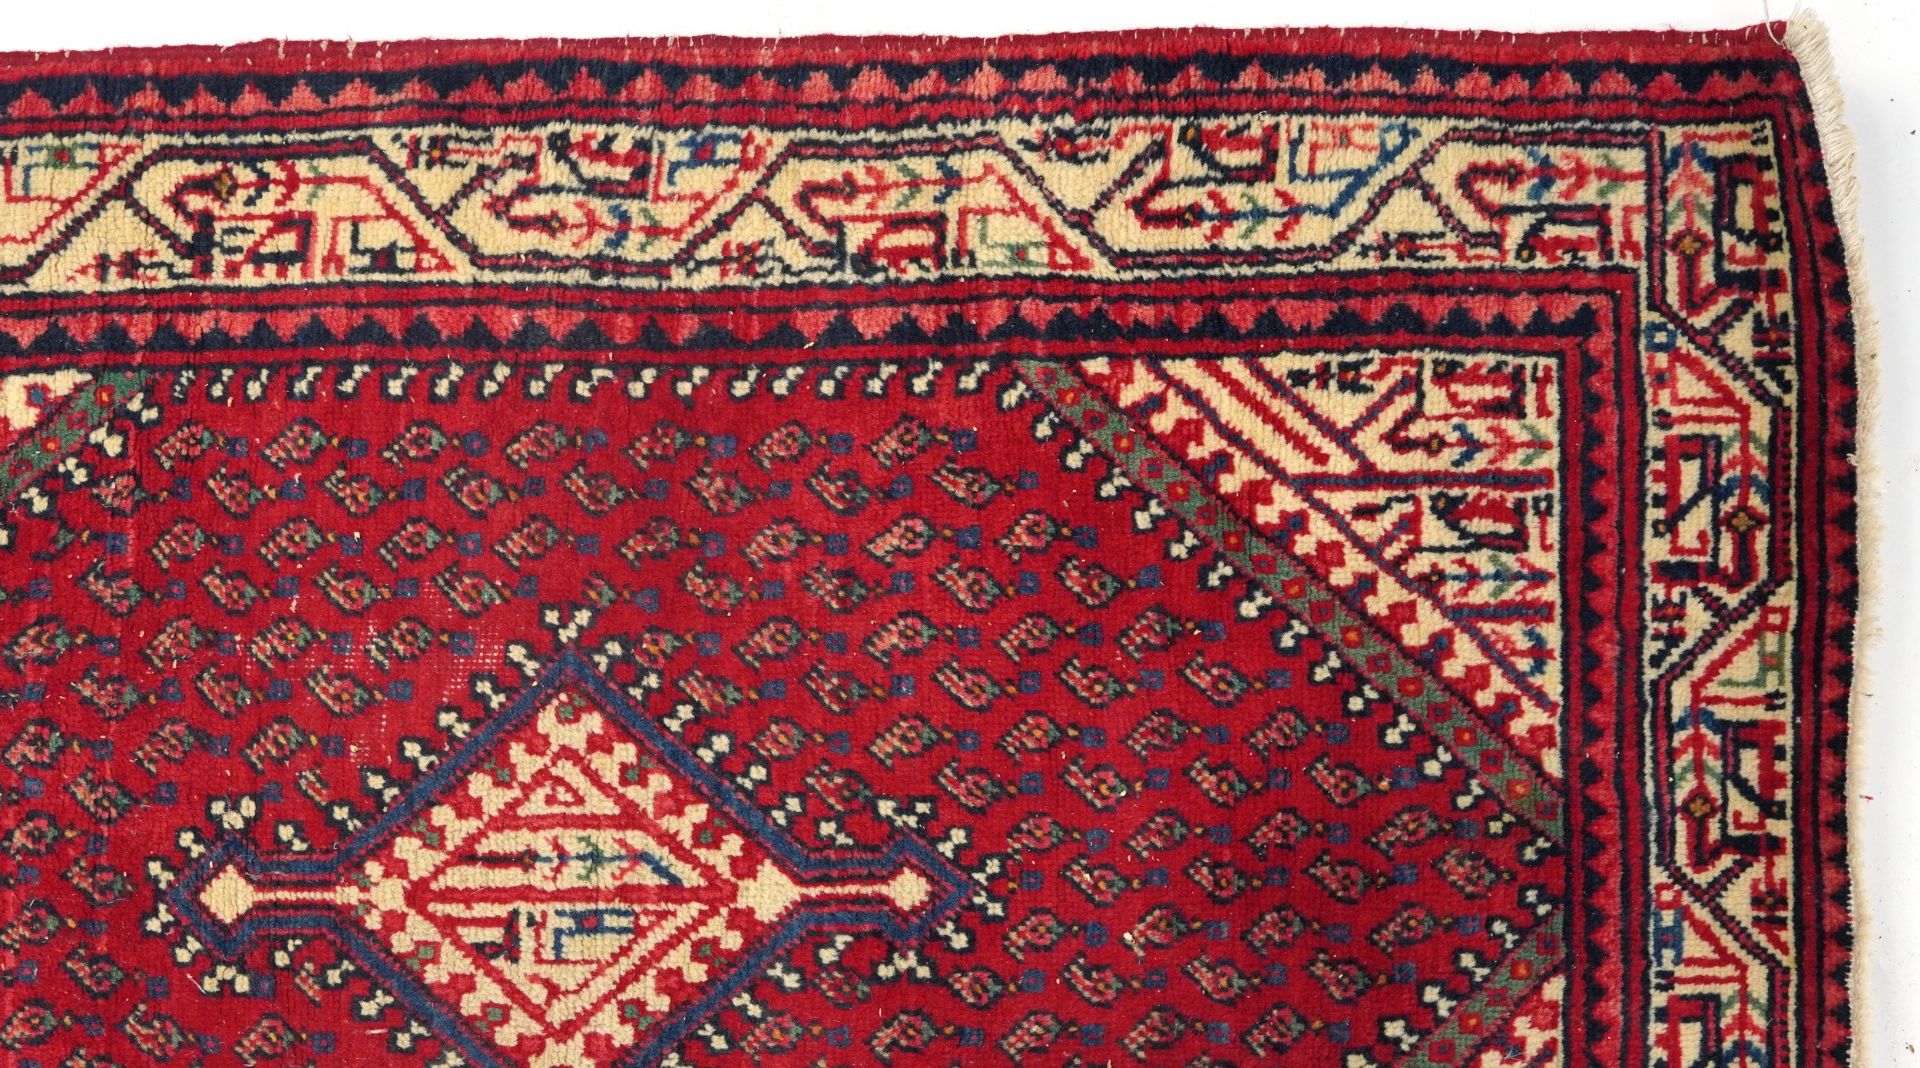 Rectangular Middle Eastern red ground rug, 155cm x 105cm - Bild 3 aus 6